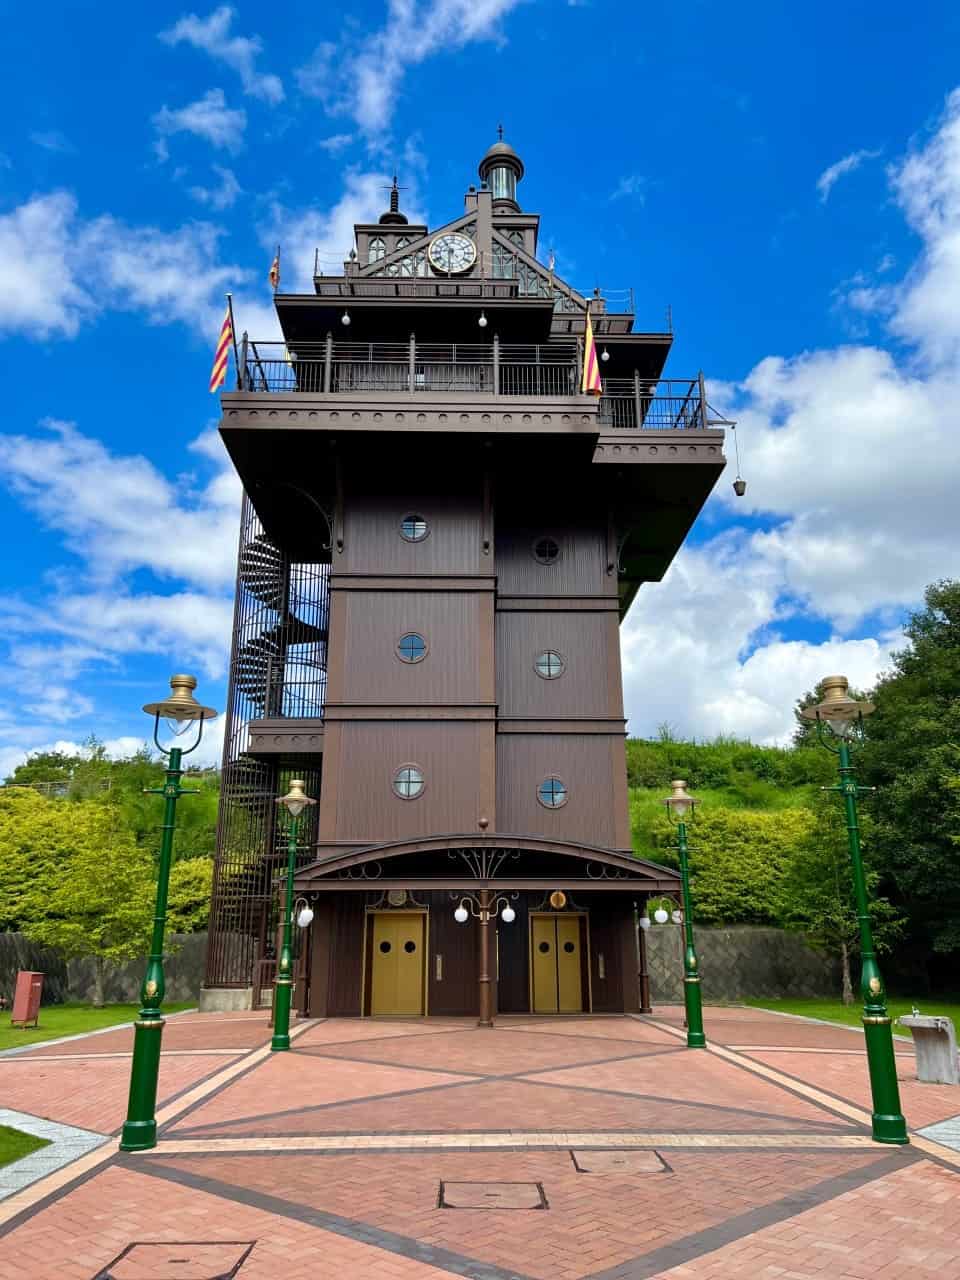 Ghibli Park Elevator Tower